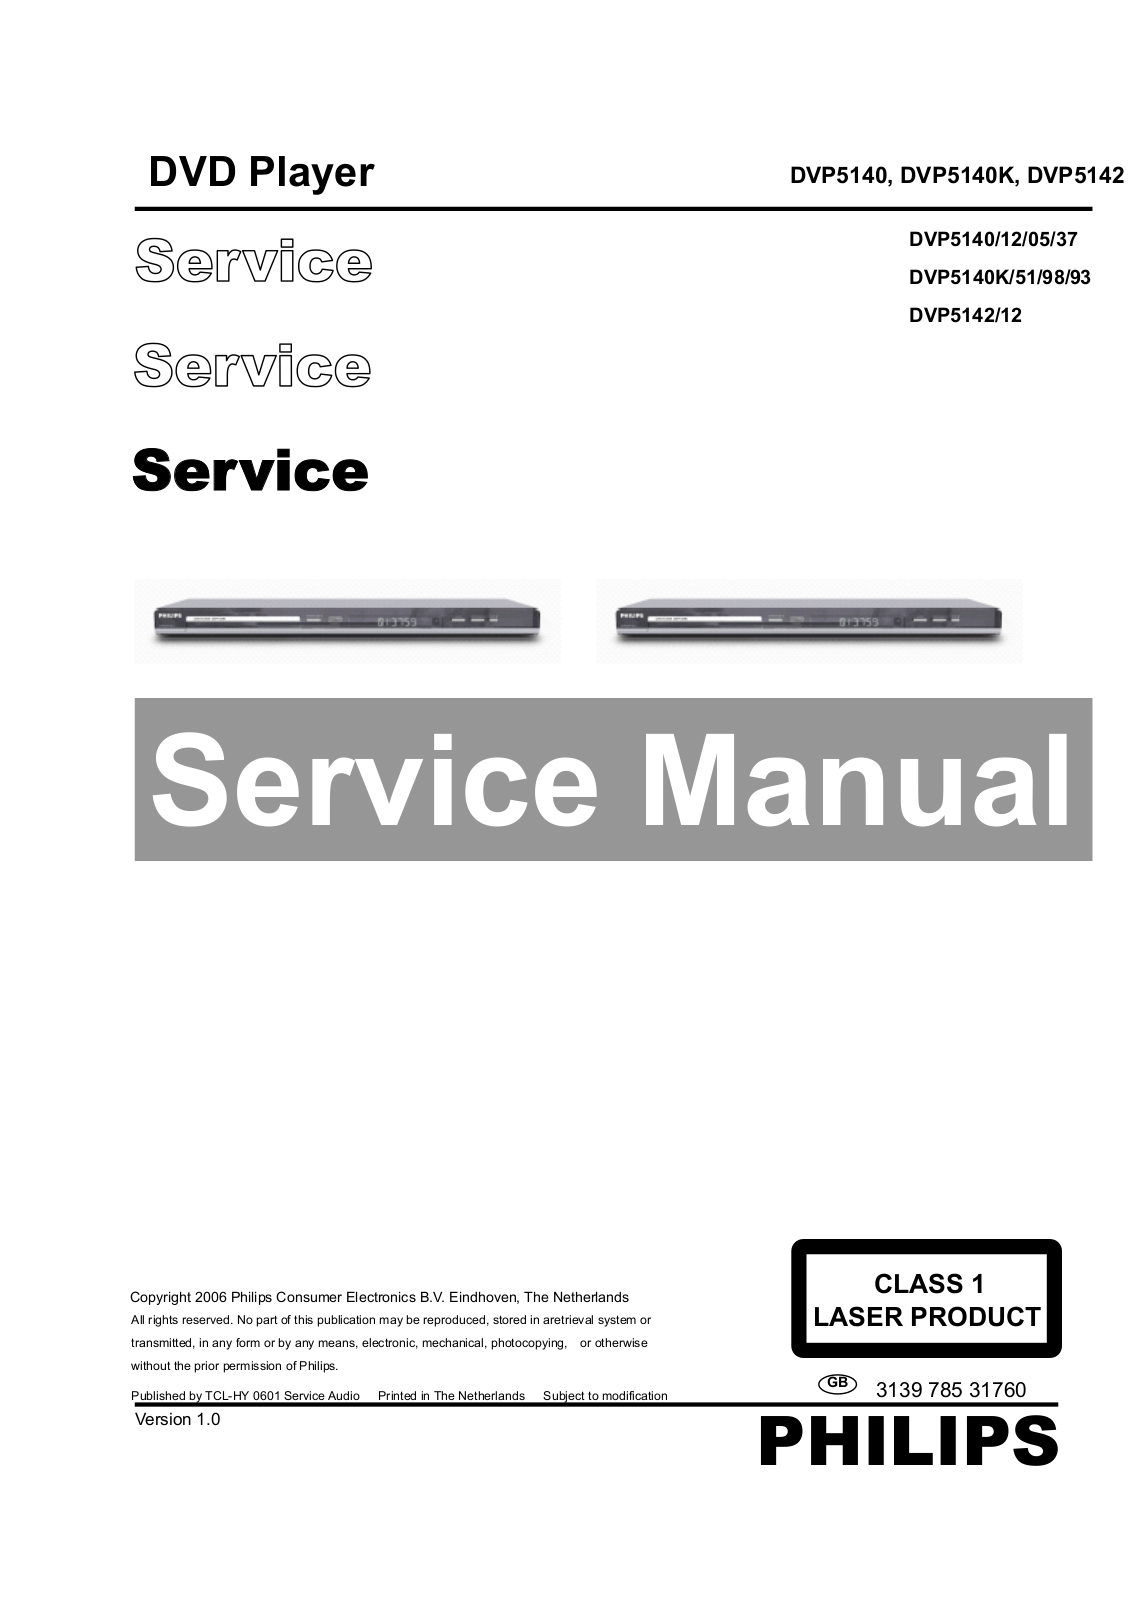 Philips DVP-5142, DVP-5140-K, DVP-5140 Service Manual